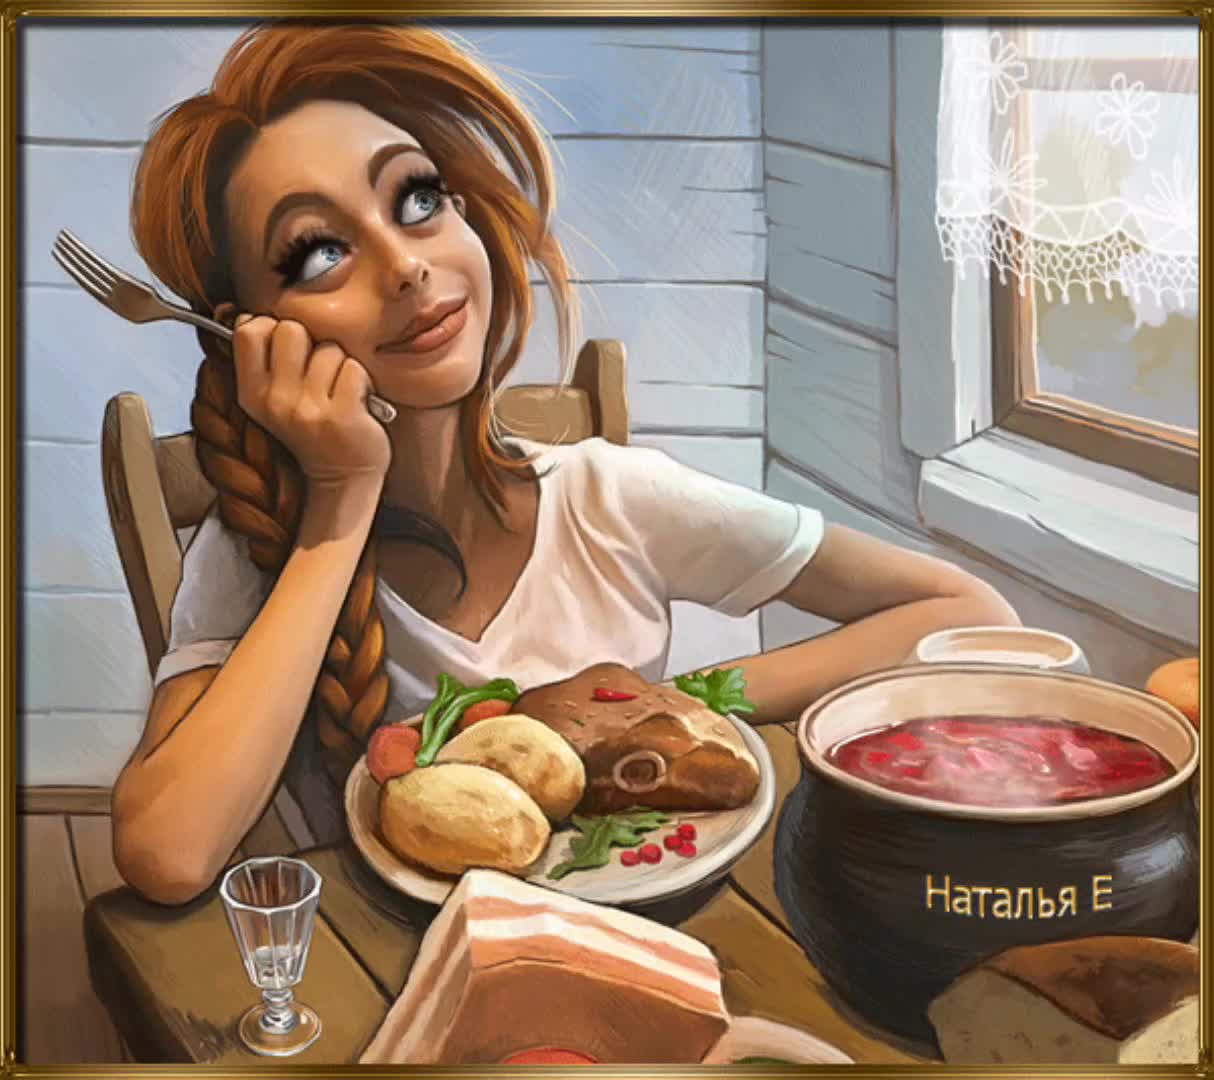 Мама посидим на кухне. Кухня иллюстрация. Веселые иллюстрации. Нарисованная девушка с едой. Юмористические иллюстрации.